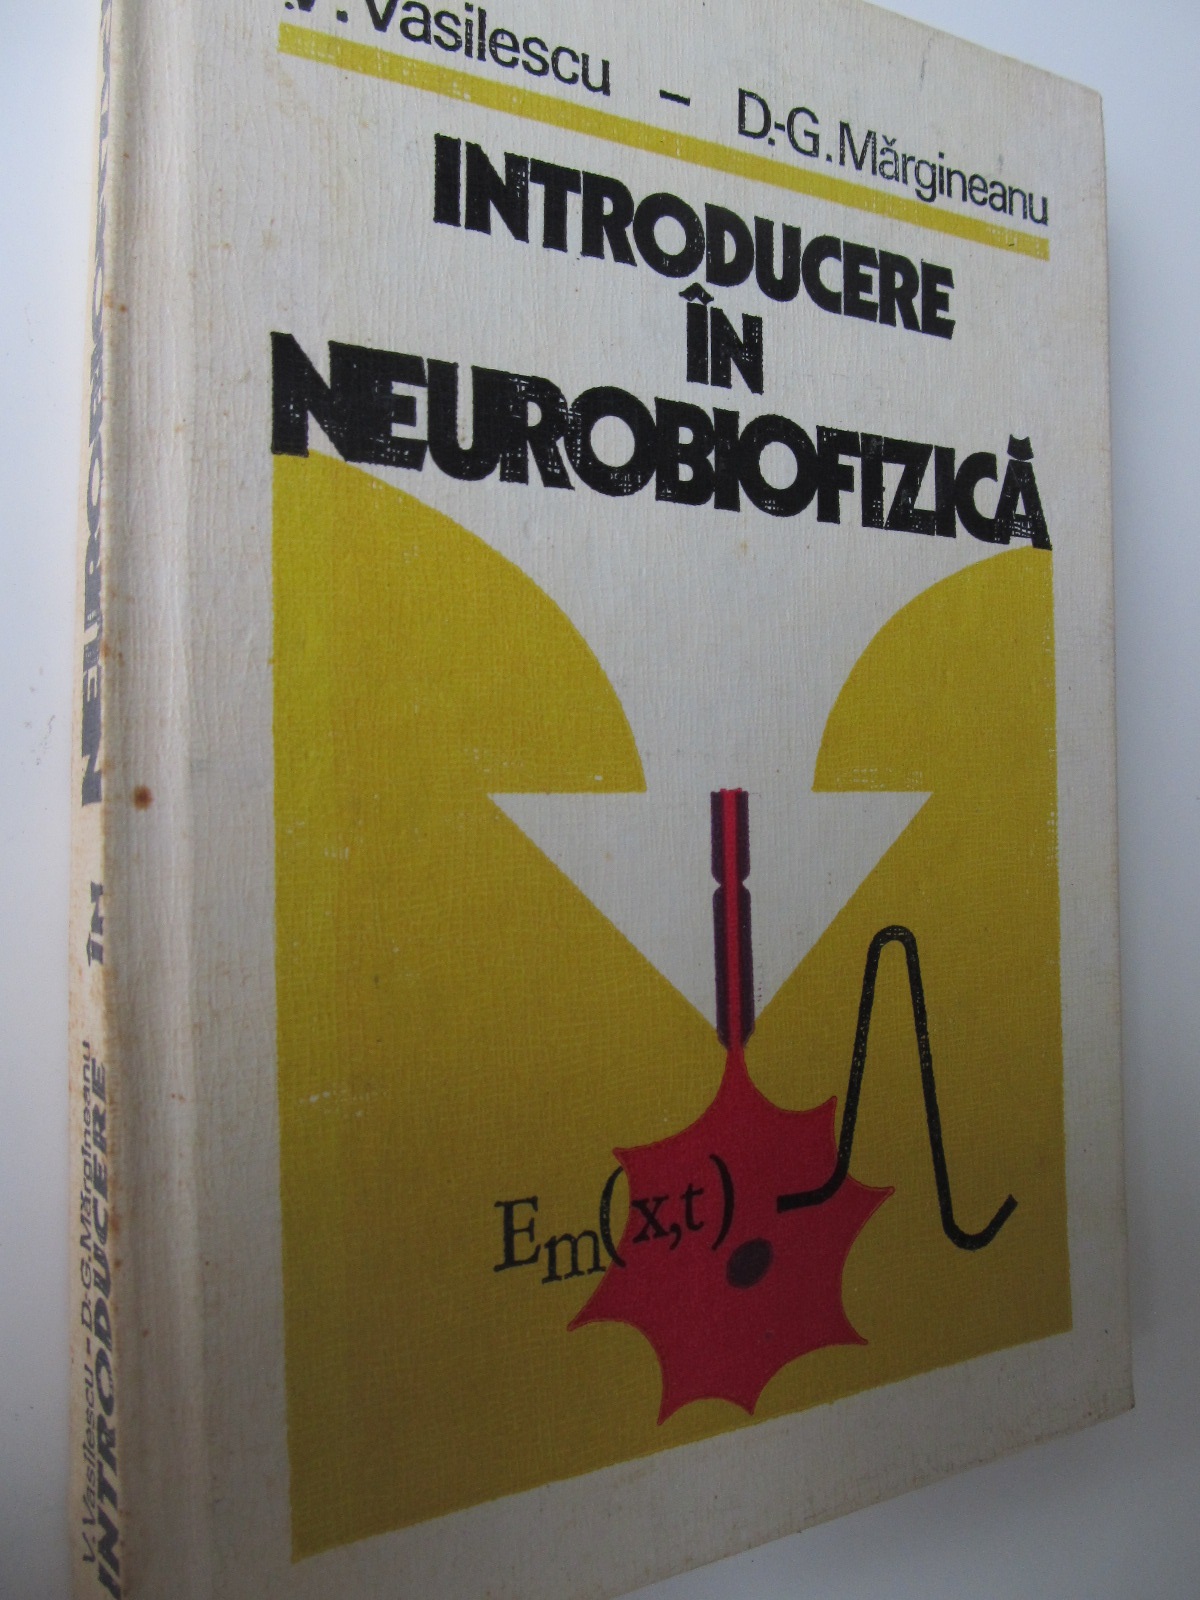 Introducere in neurobiofizica - V. Vasilescu , D. G. Margineanu | Detalii carte